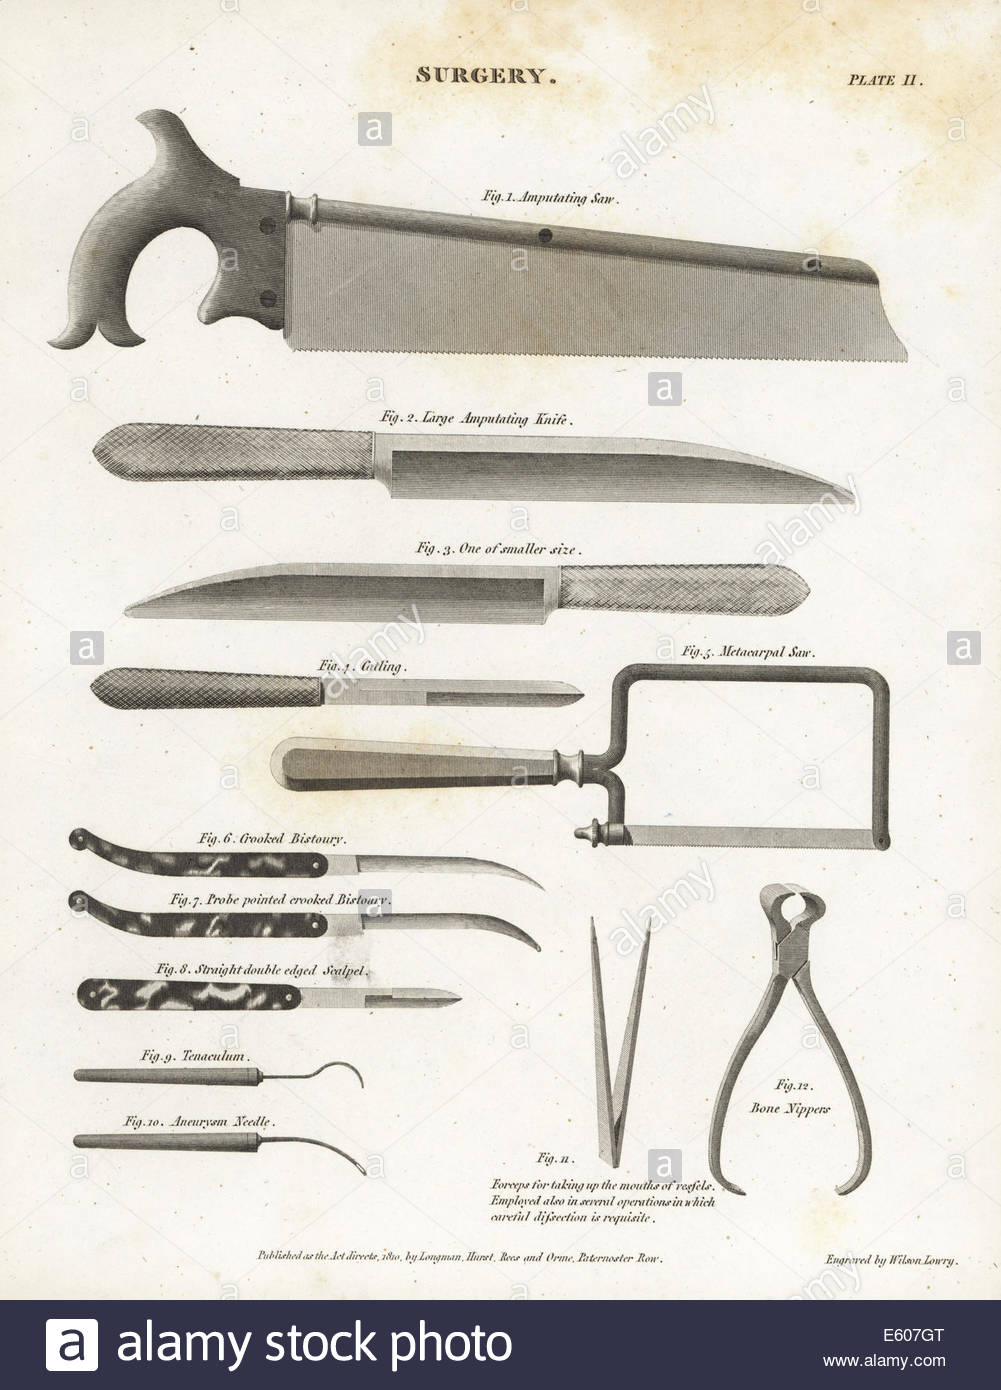 Equipo quirúrgico incluyendo amputar de sierras, cuchillos, catling,  bisturí, etc. Imagen